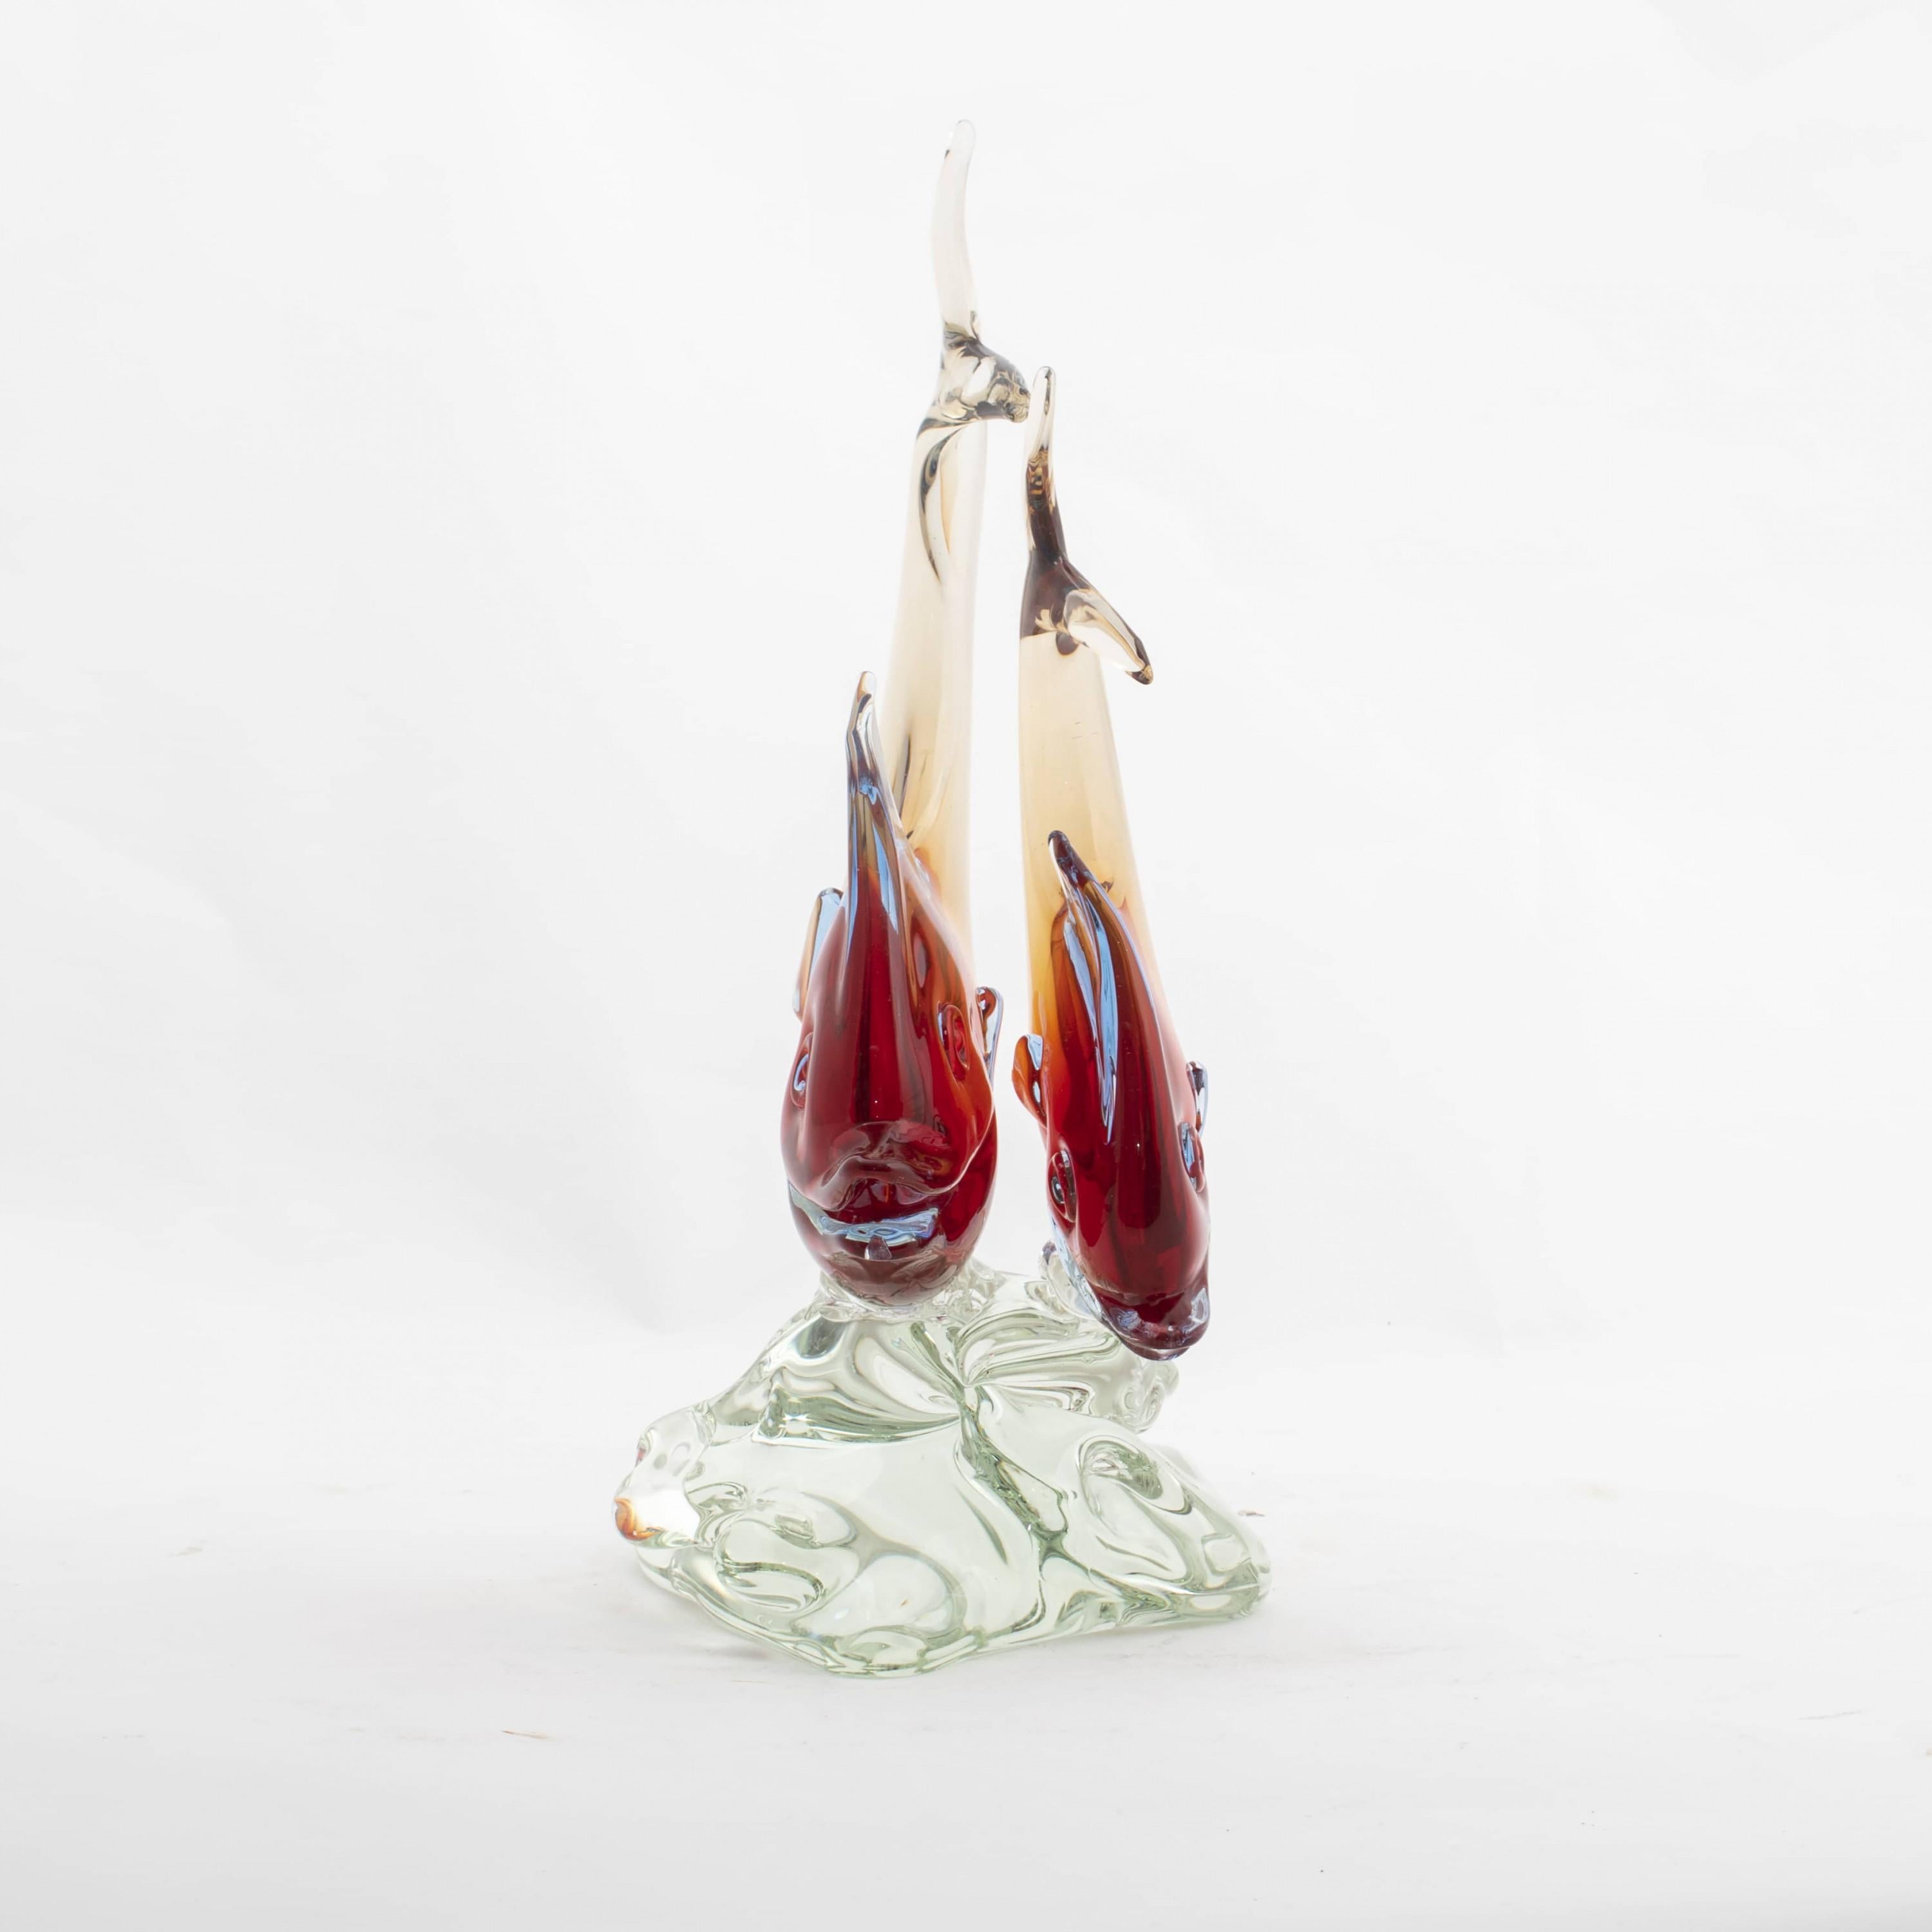 Grande et élégante sculpture d'art en verre de Murano représentant deux poissons perchés sur une base moulée.
Cette magnifique sculpture en verre soufflé à la main est faite de verre translucide infusé de couleur. Fabriqué à la main par le maître